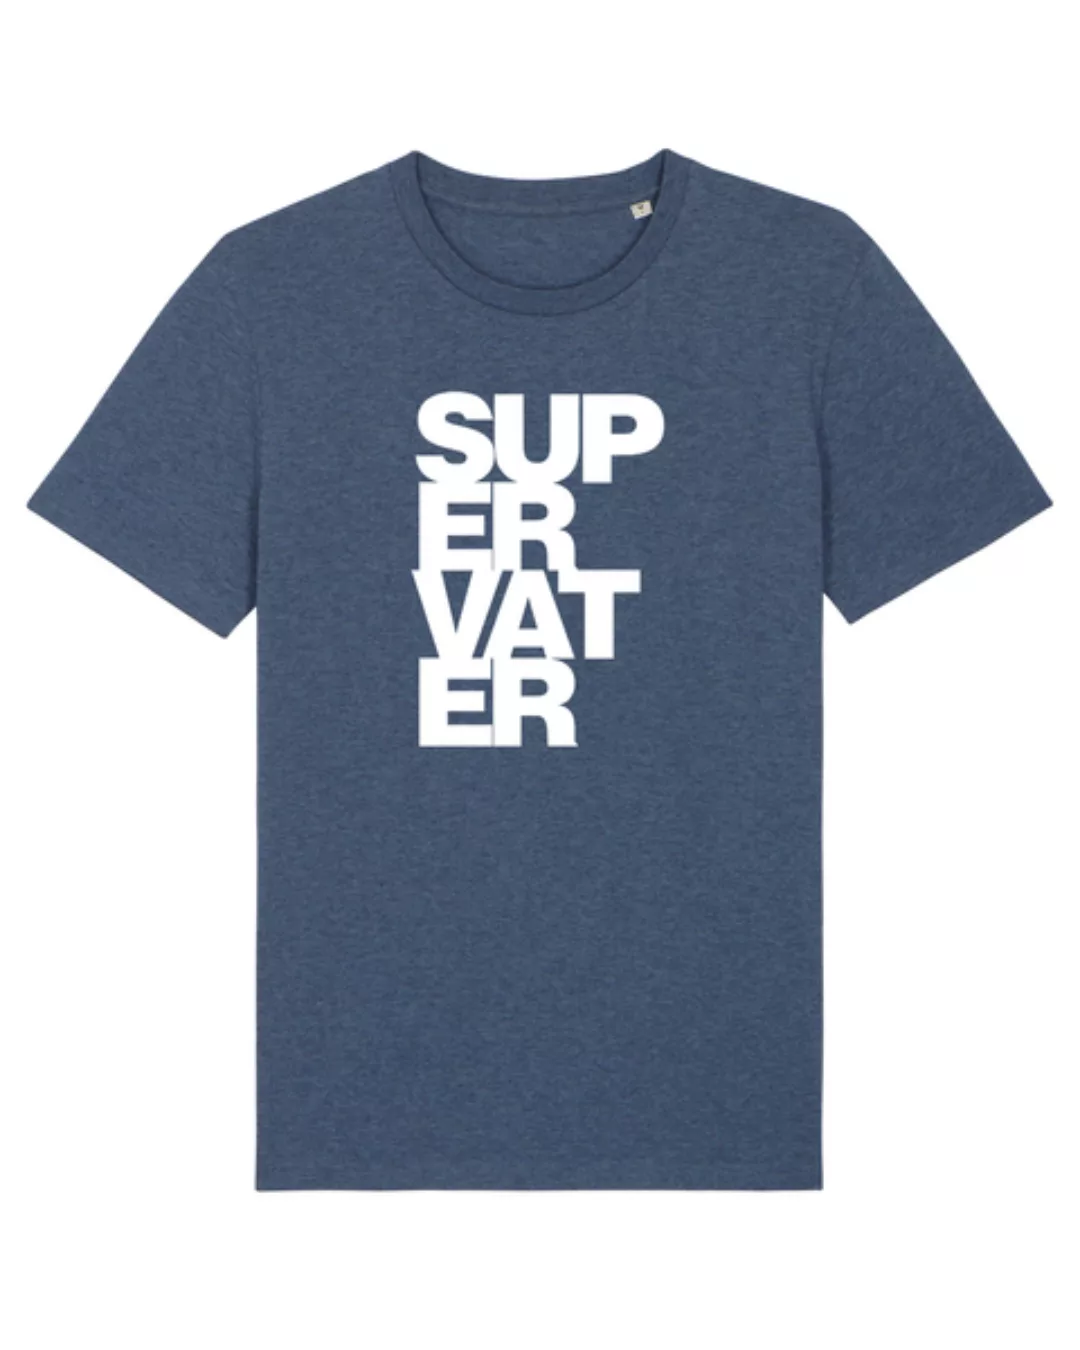 Supervater | T-shirt Herren günstig online kaufen